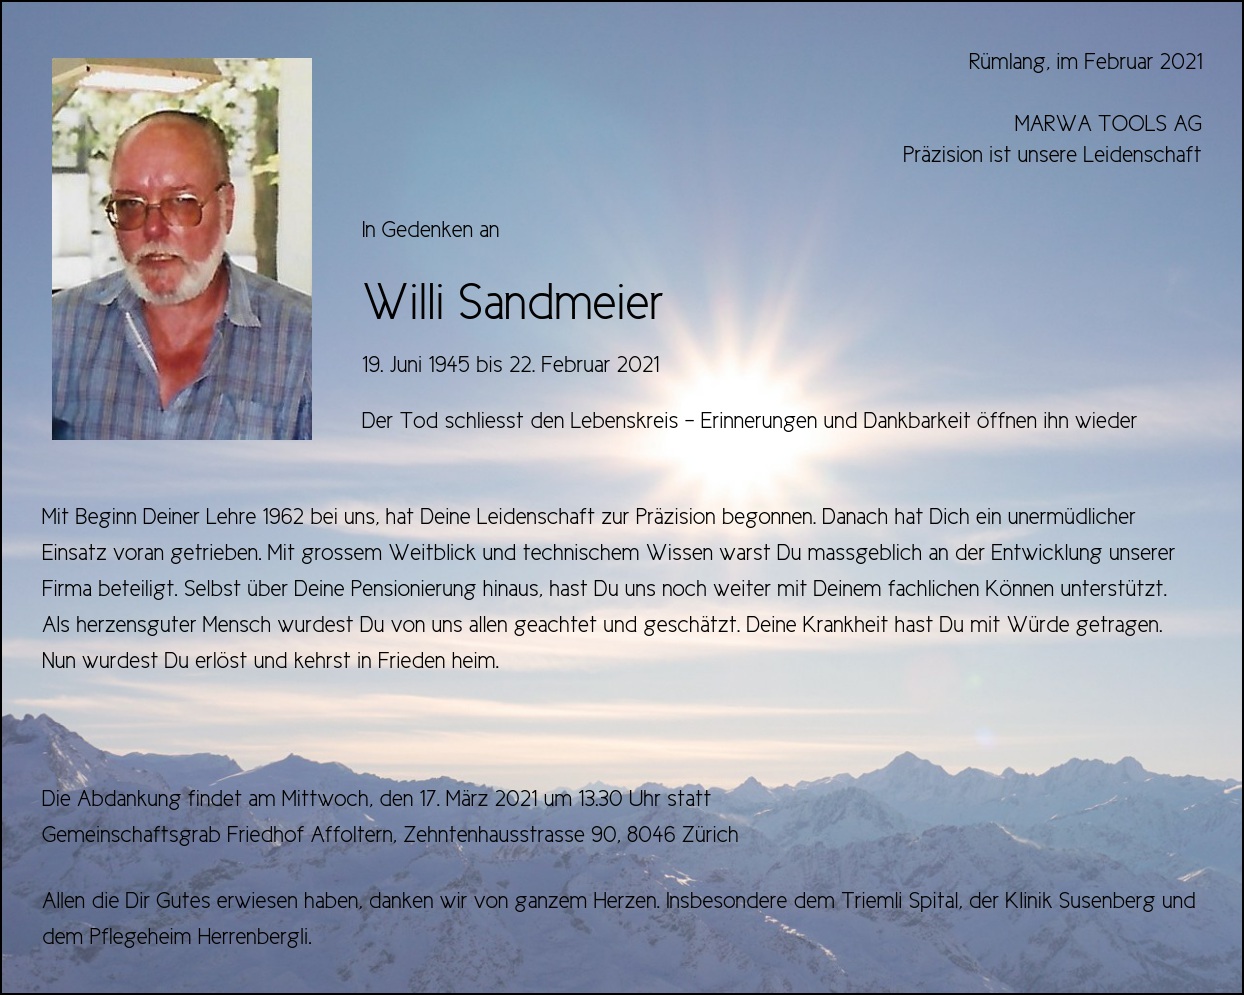 Willi Sandmeier